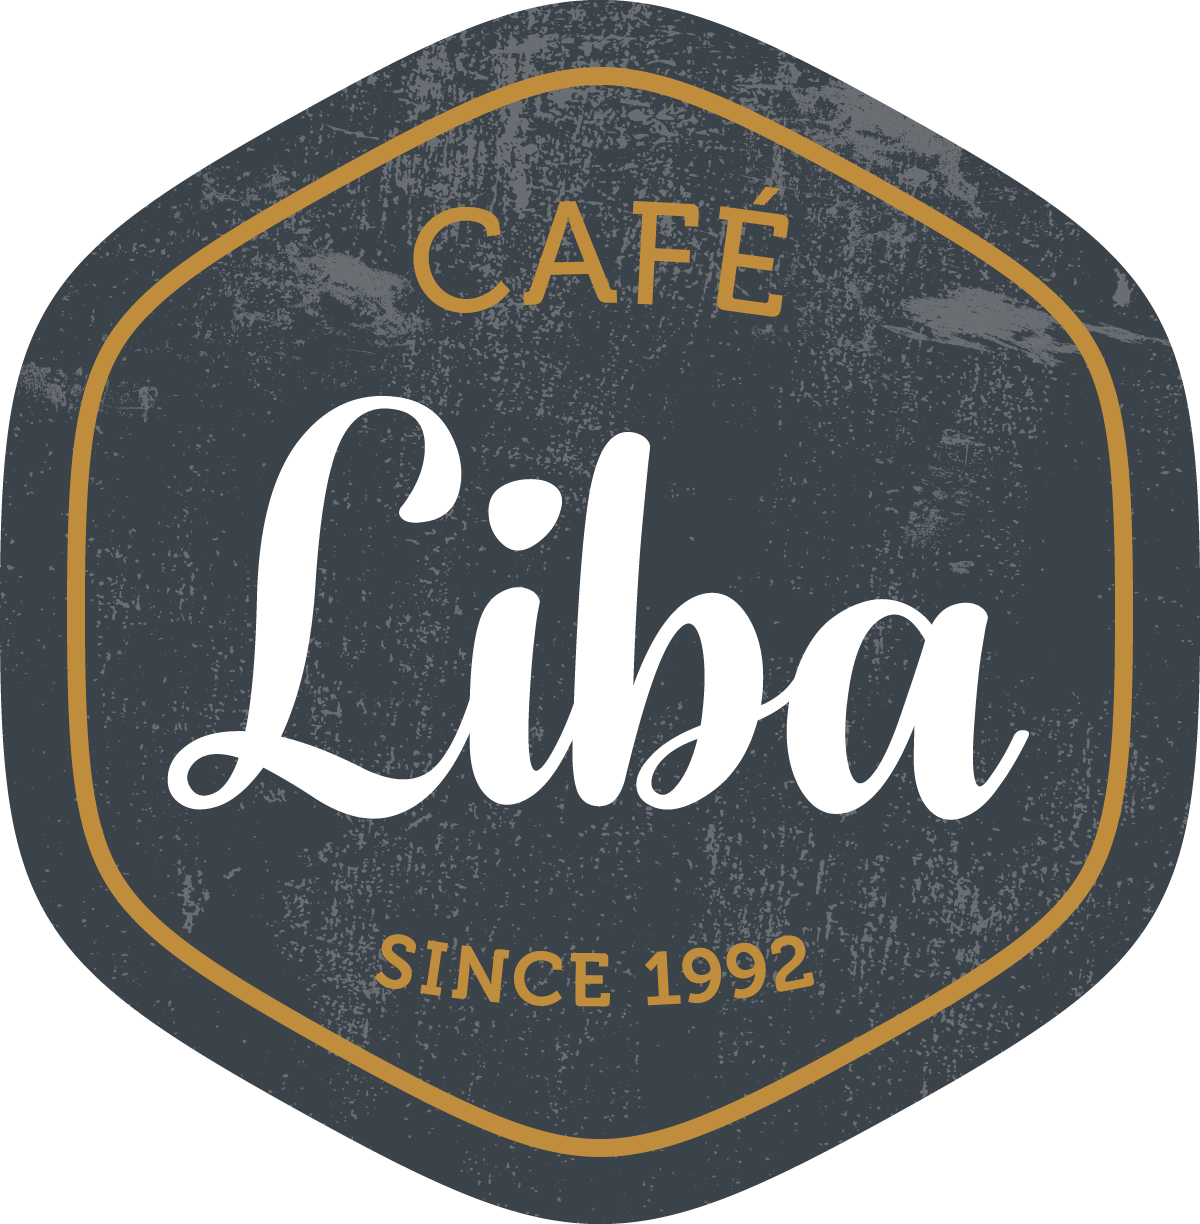 CAFÉ Liba SINCE 1992